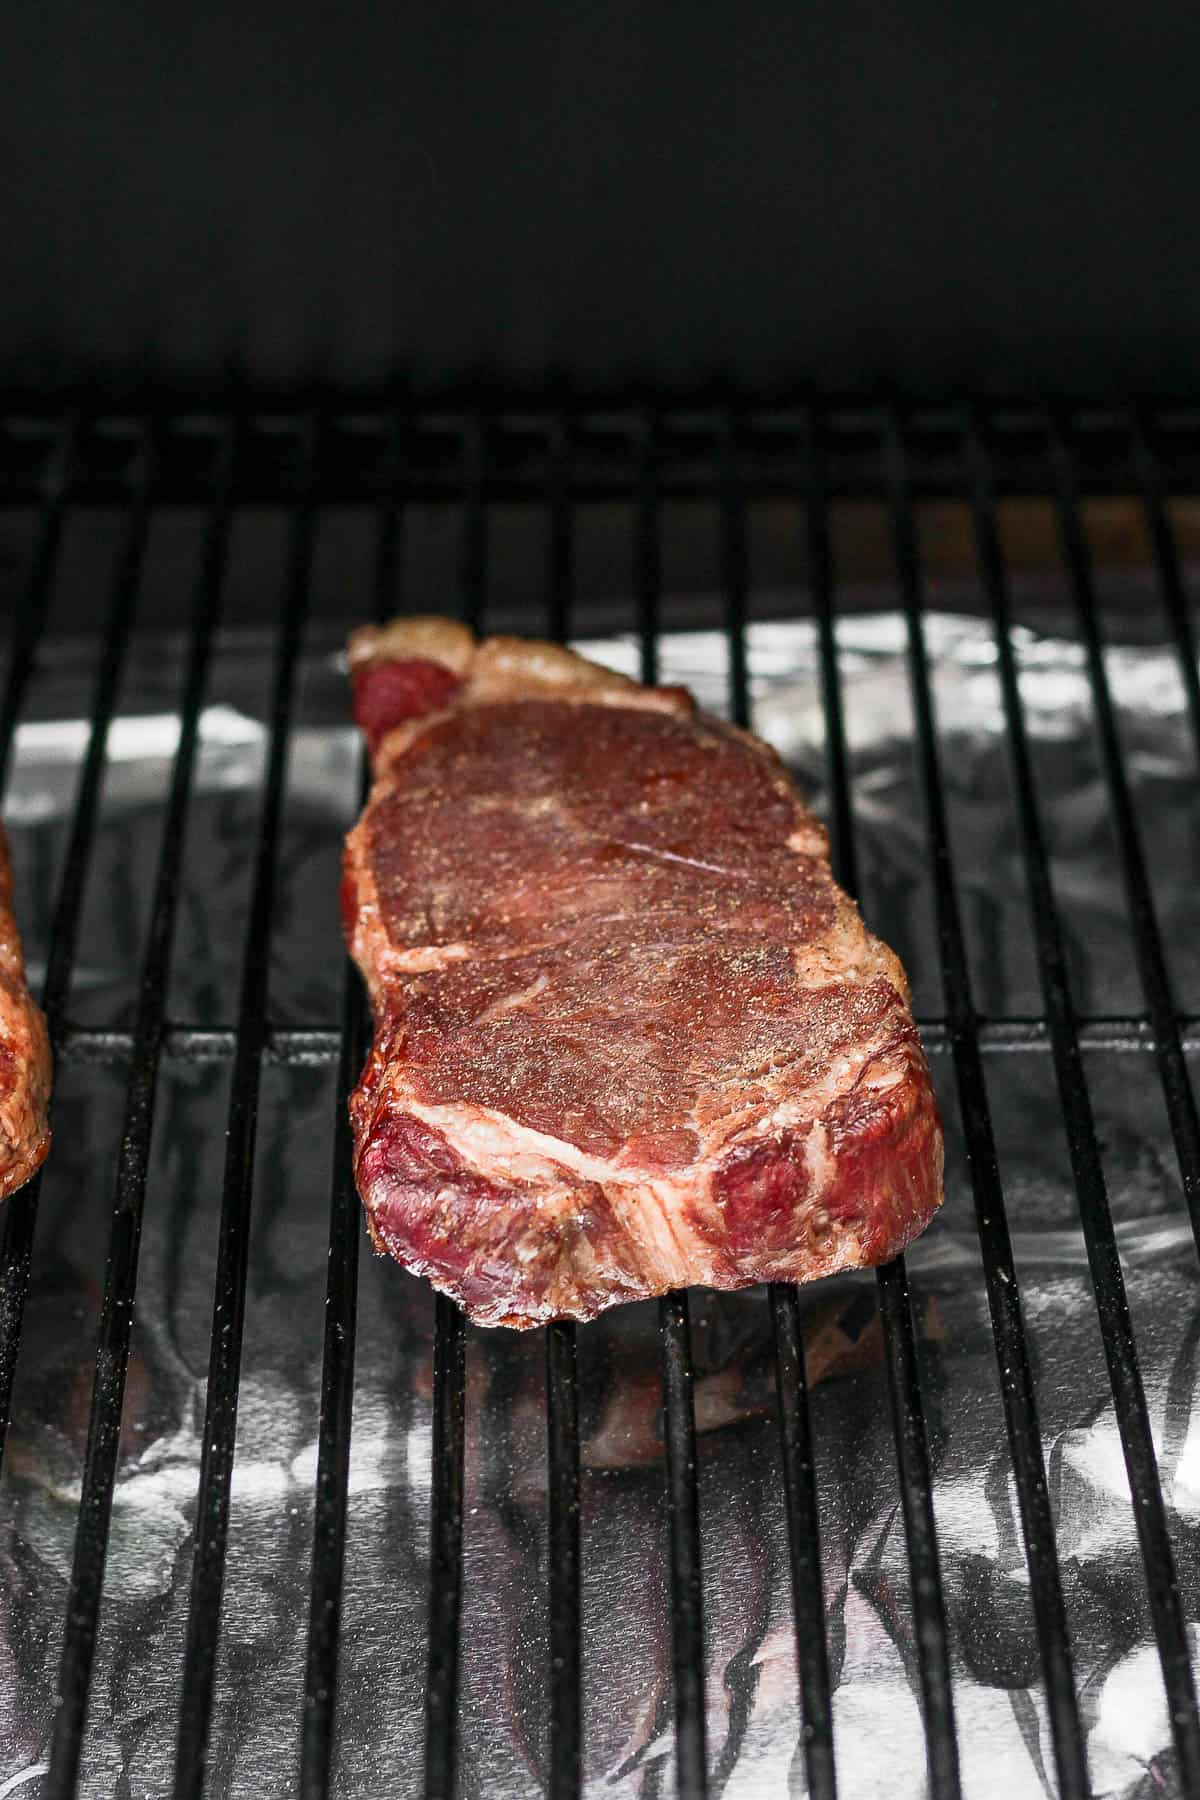 A smoked steak on a smoker.